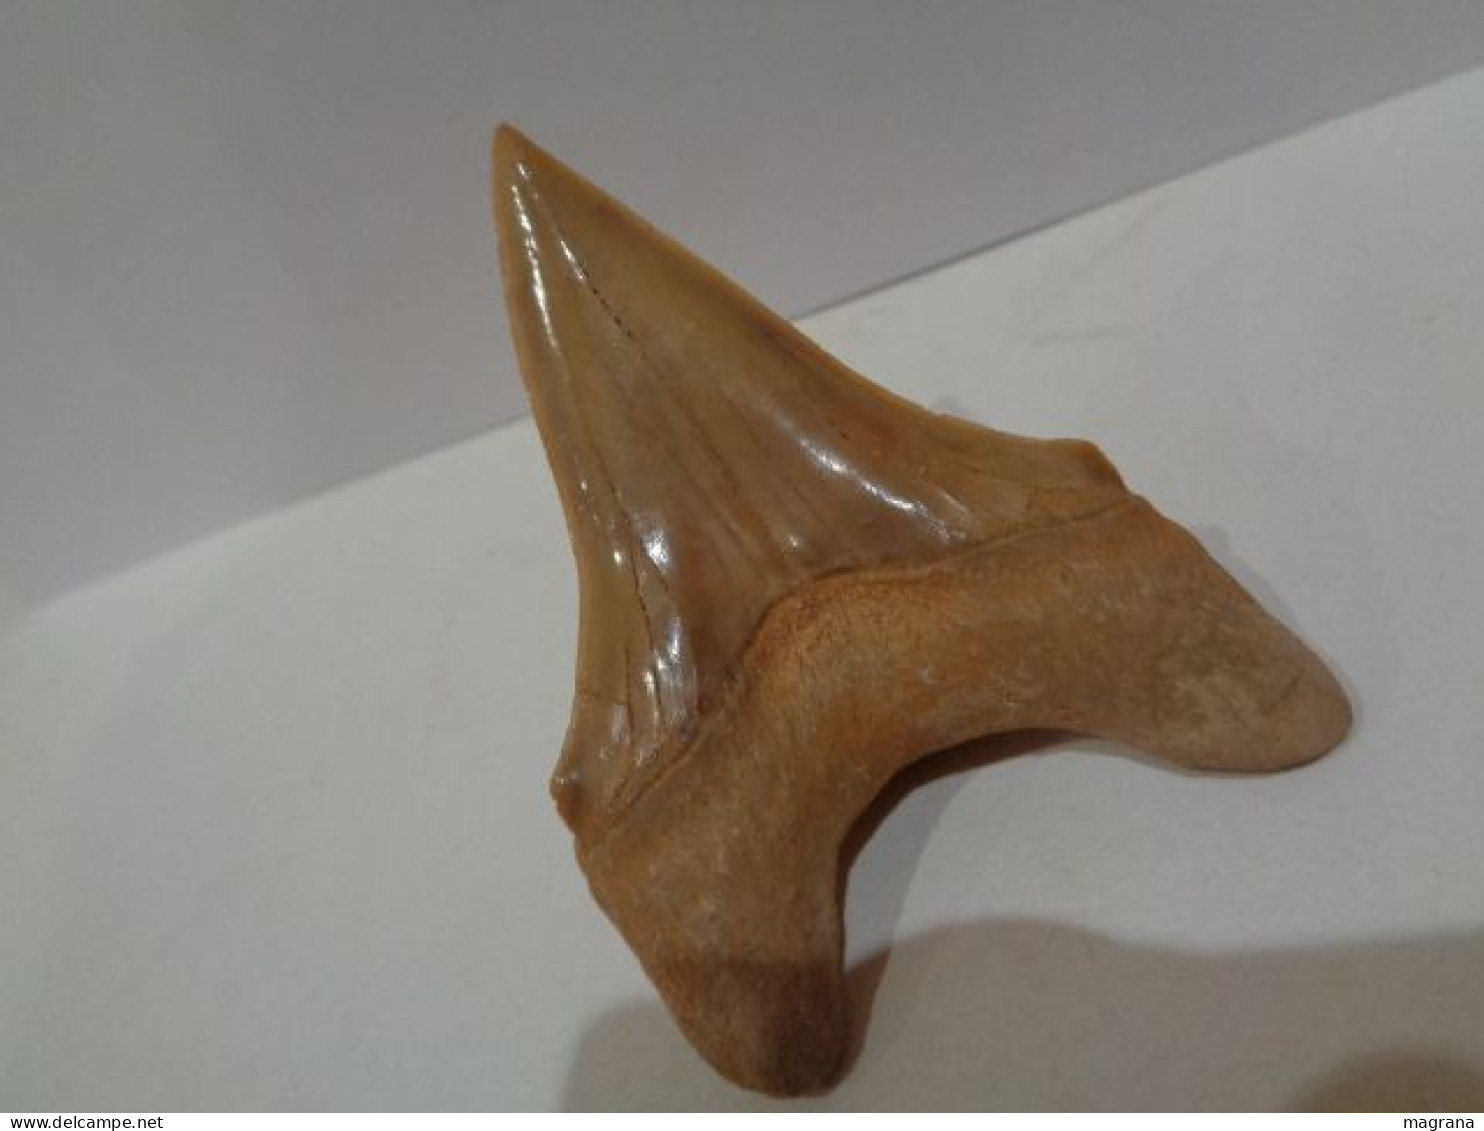 Gran diente fósil teratologico de tiburón. Otodus Obliquus. Edad: Paleoceno- Eoceno. Procedencia:  Marruecos, Oued Zem.